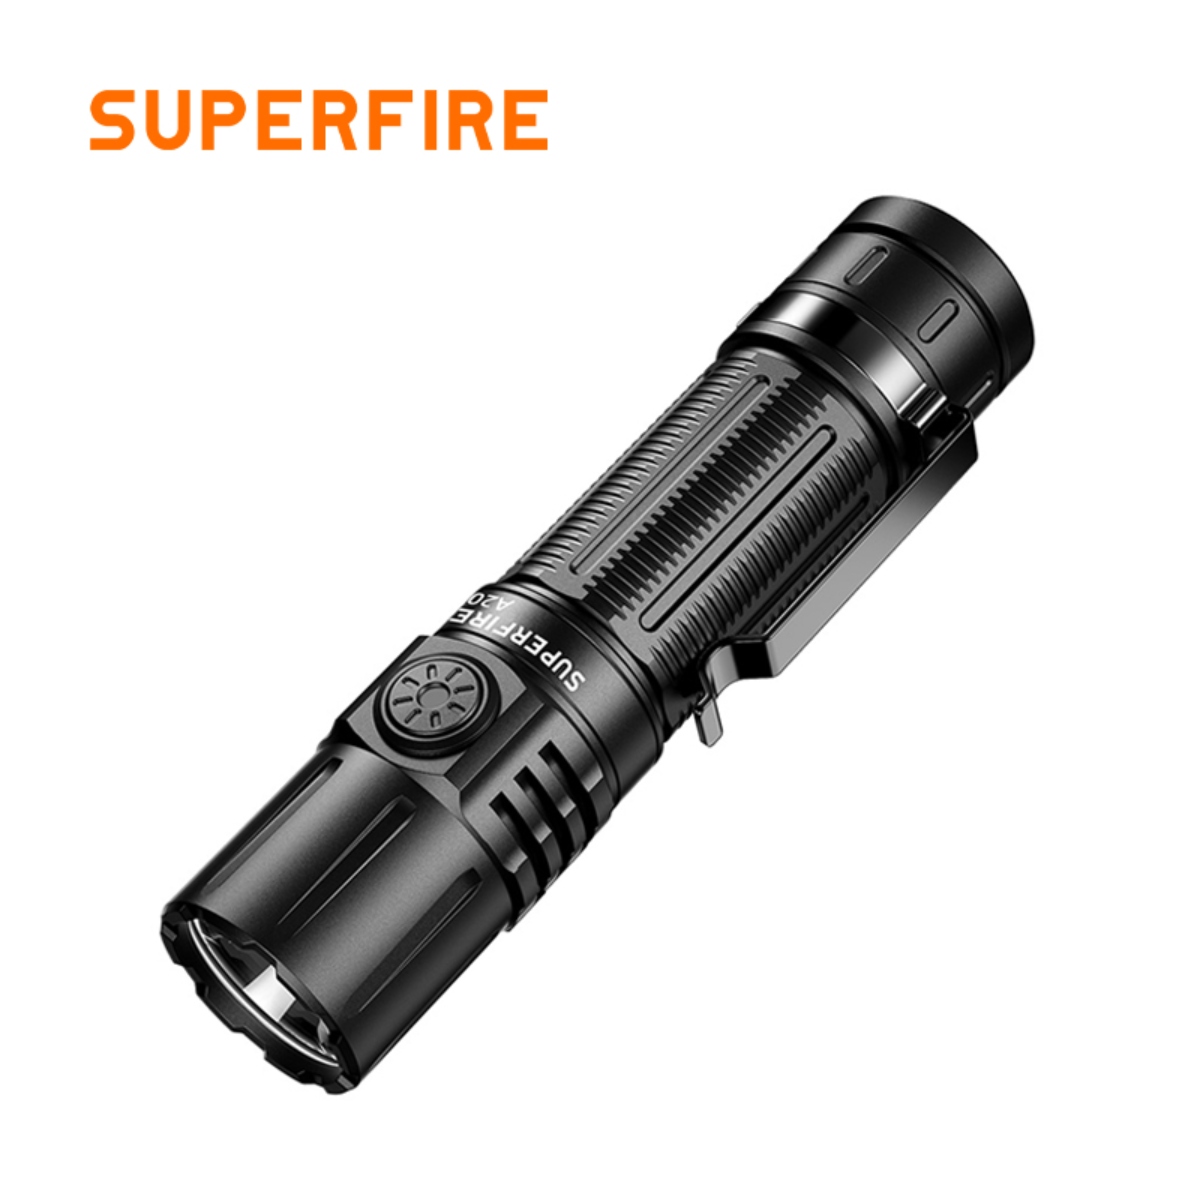 SUPERFIRE A20 Tactical Super Bright Flashlight